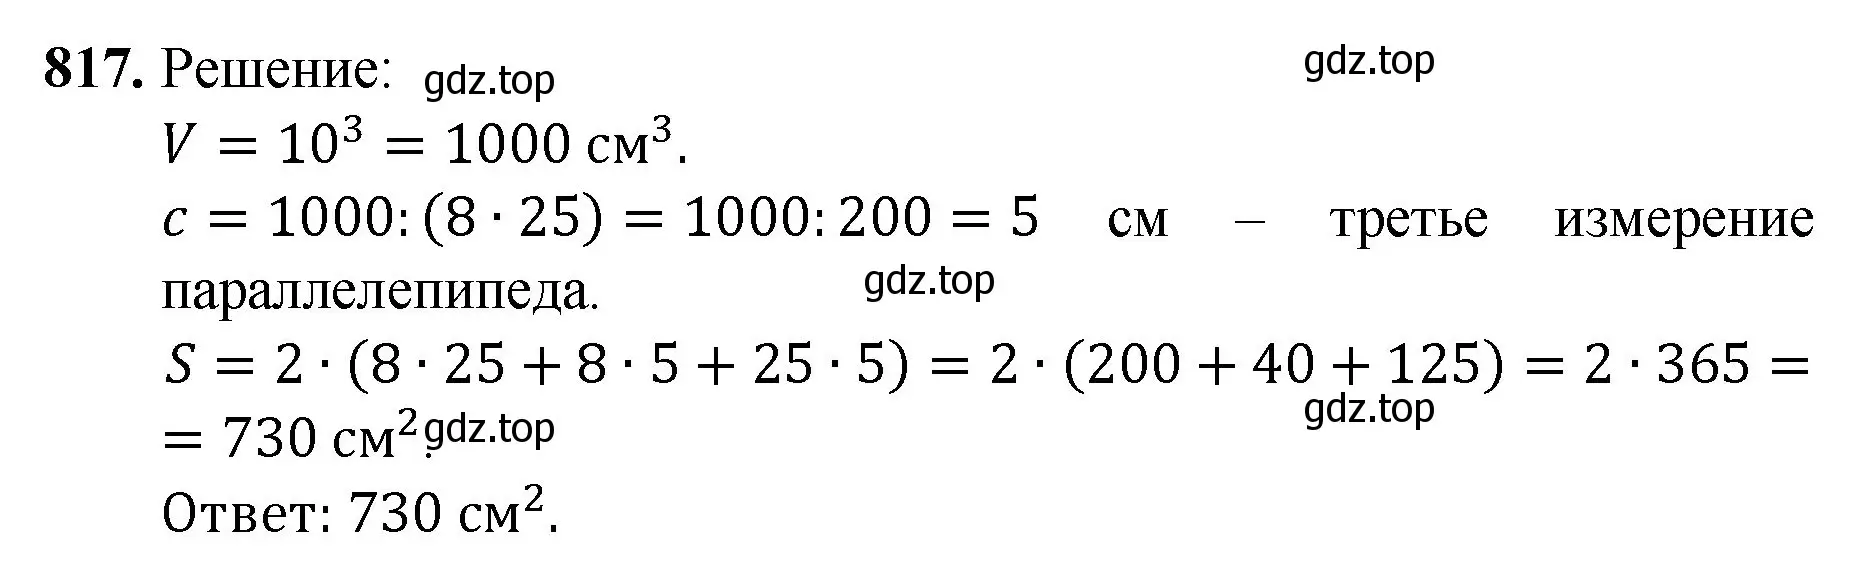 Решение номер 817 (страница 183) гдз по математике 5 класс Мерзляк, Полонский, учебник